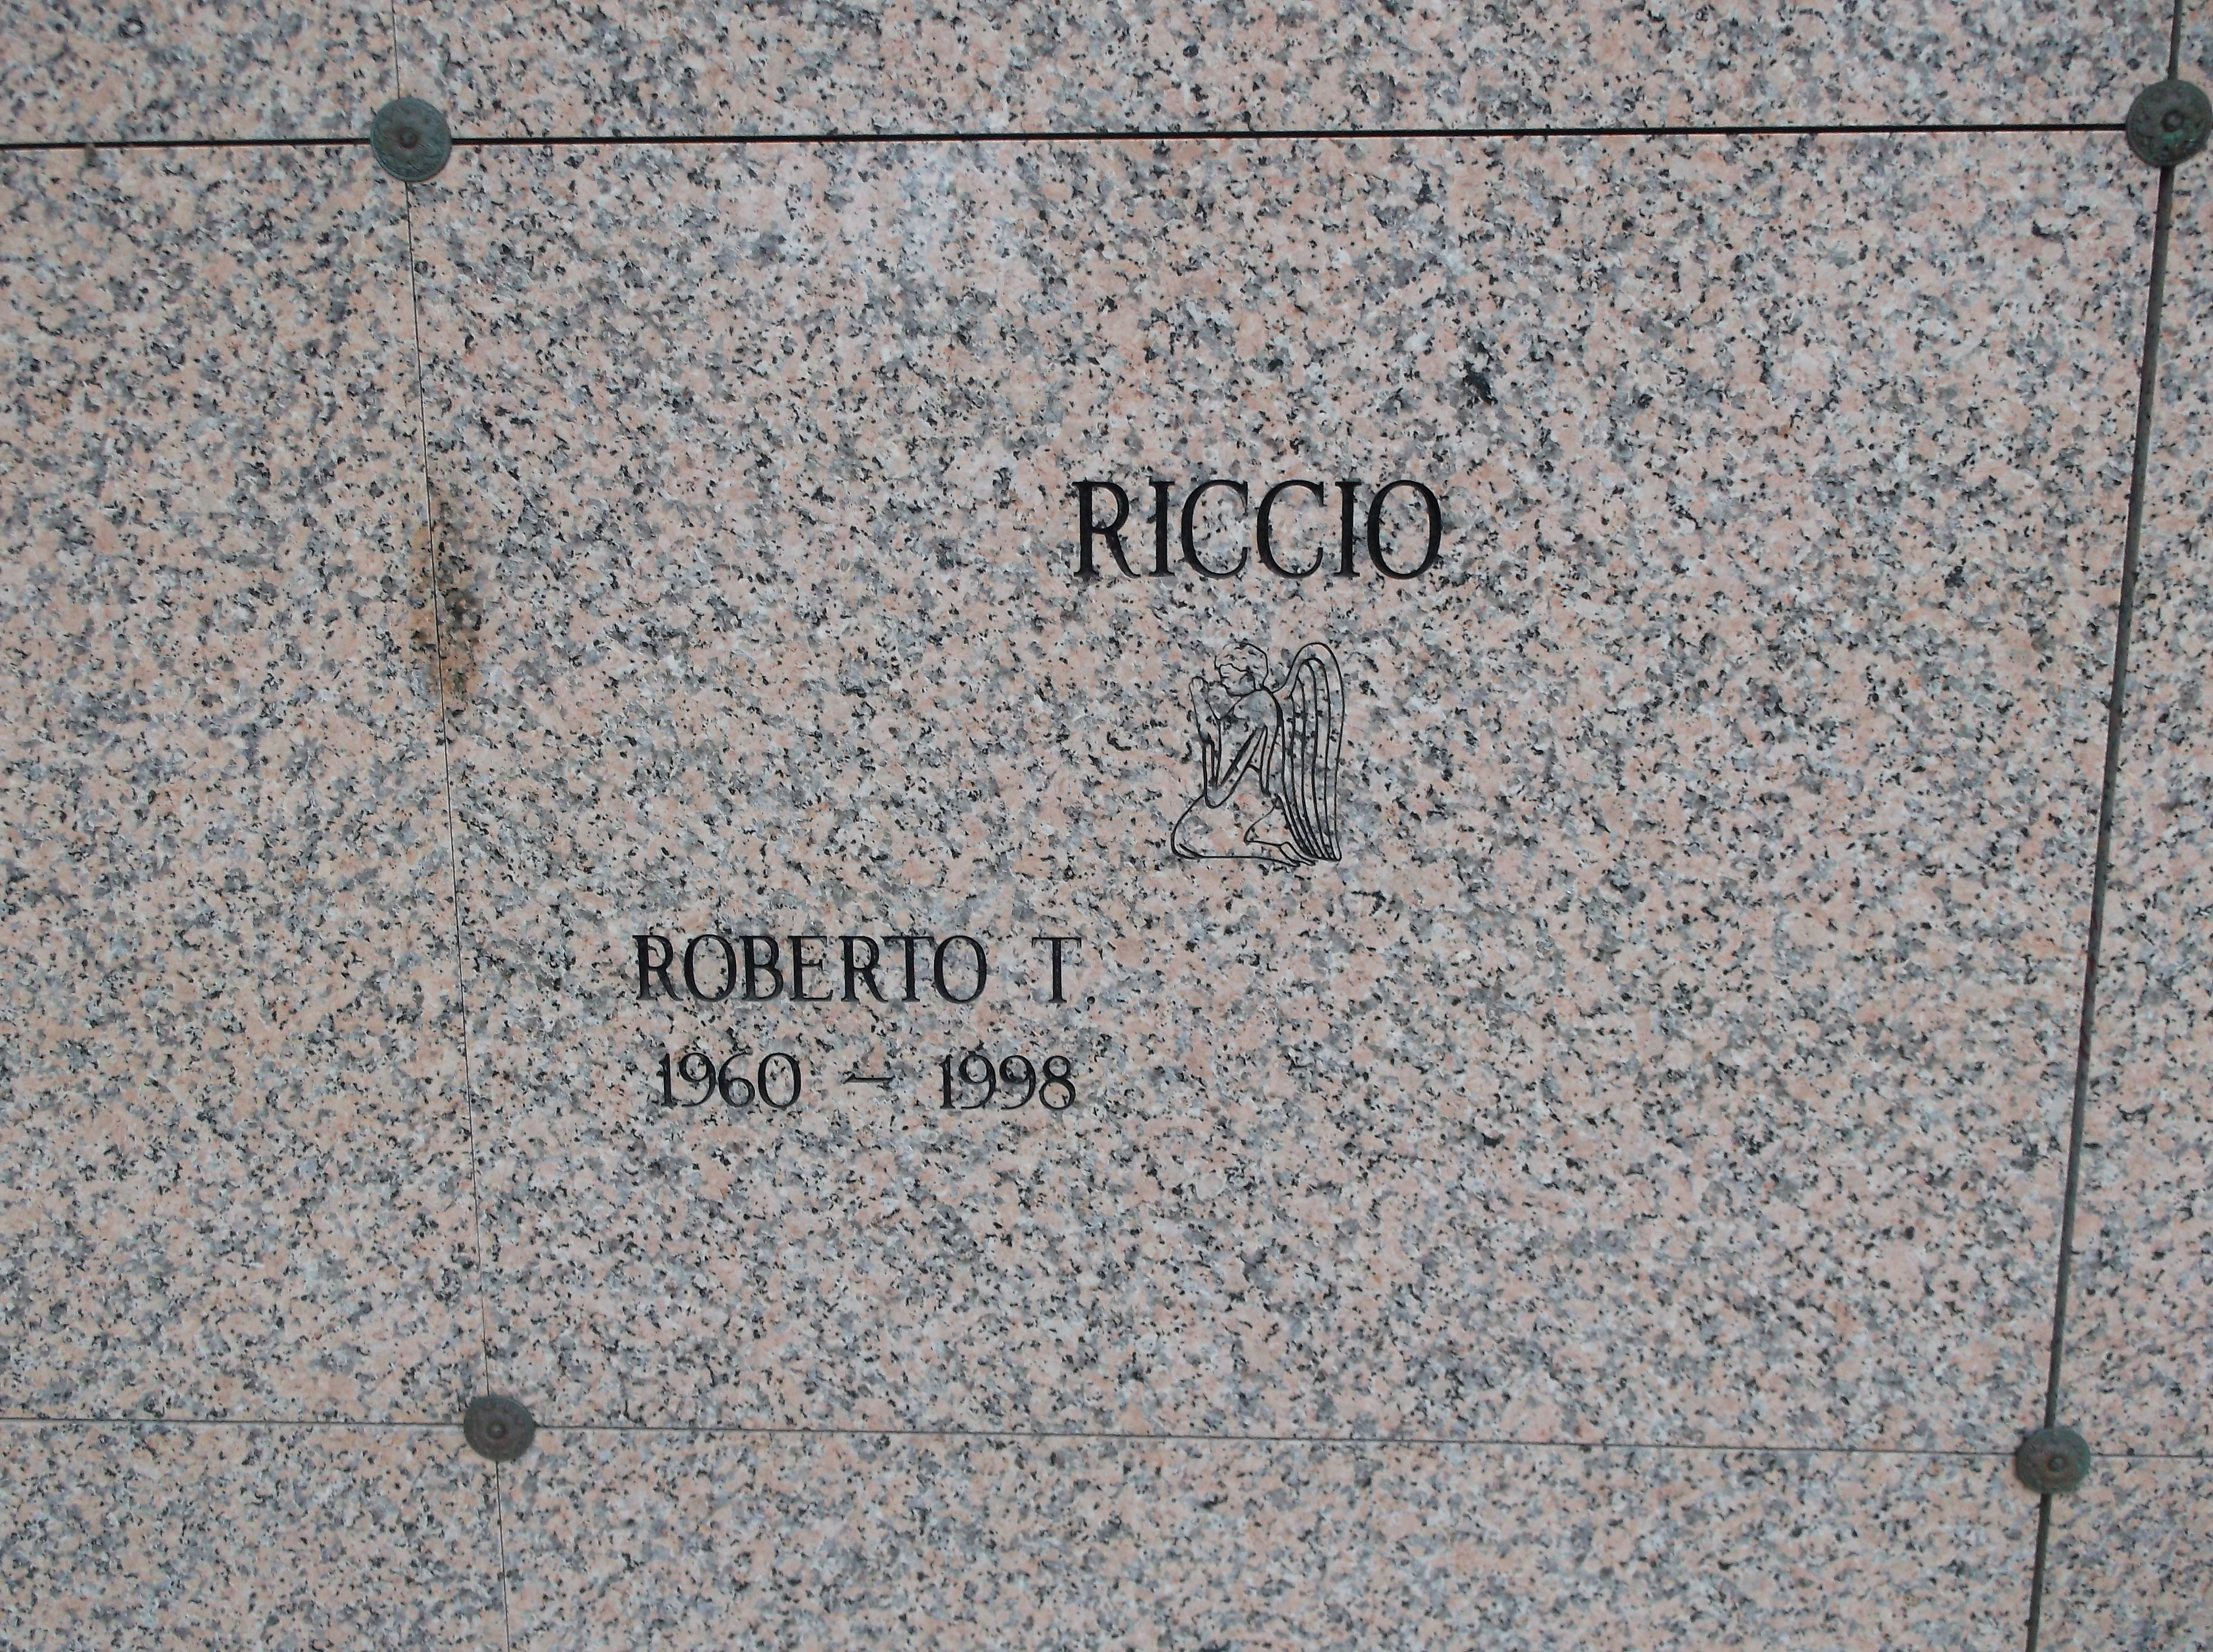 Roberto T Riccio